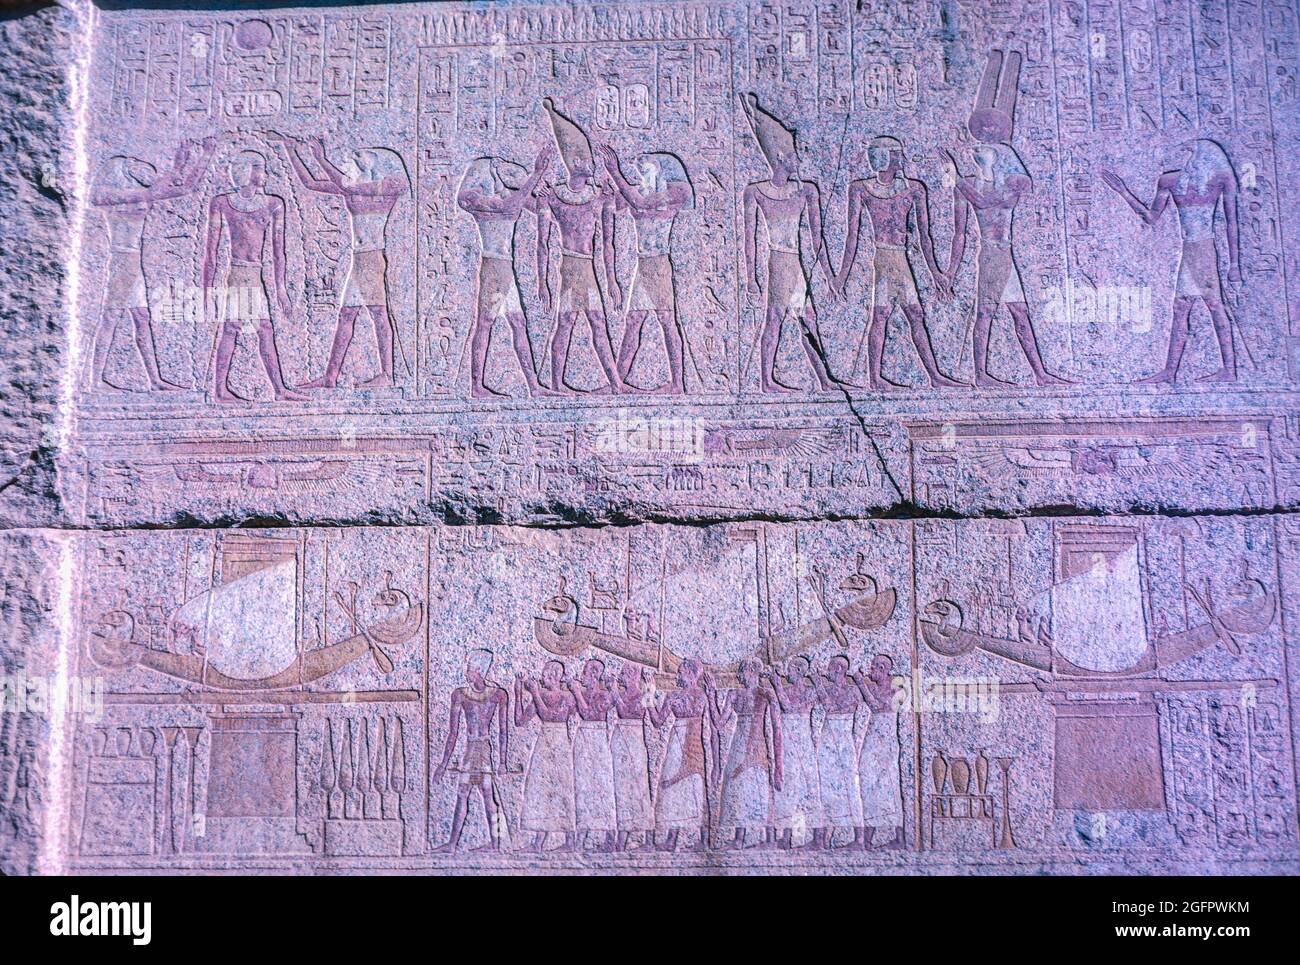 Karnak, Egitto, dicembre 1967. Tempio di Amun Ra. L'intaglio centrale-inferiore del rilievo del pannello mostra la barque di Amun Ra che è trasportato attraverso il mondo sotterraneo. IV secolo a.C. Foto Stock